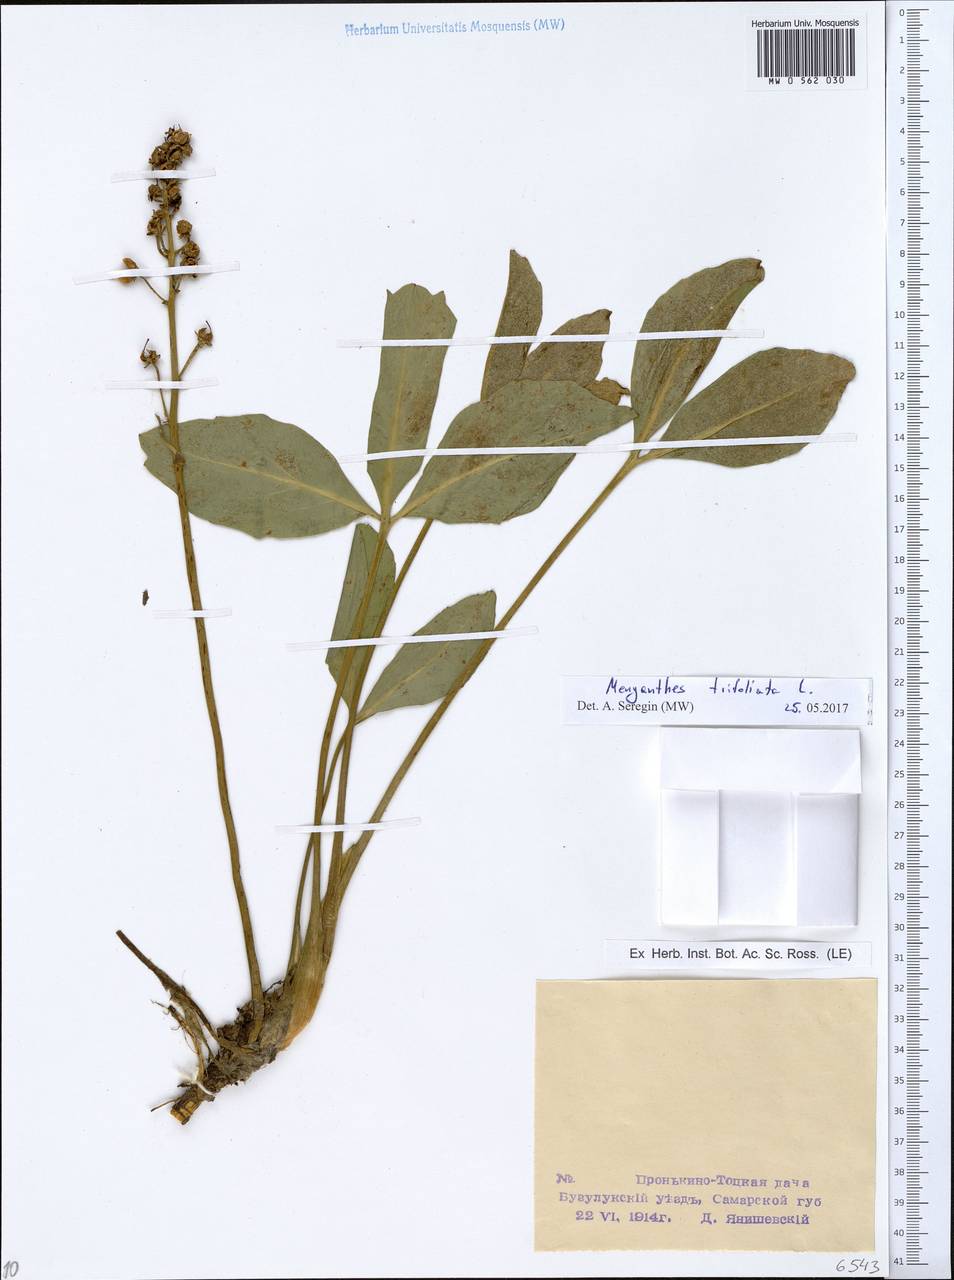 Menyanthes trifoliata L., Eastern Europe, Eastern region (E10) (Russia)